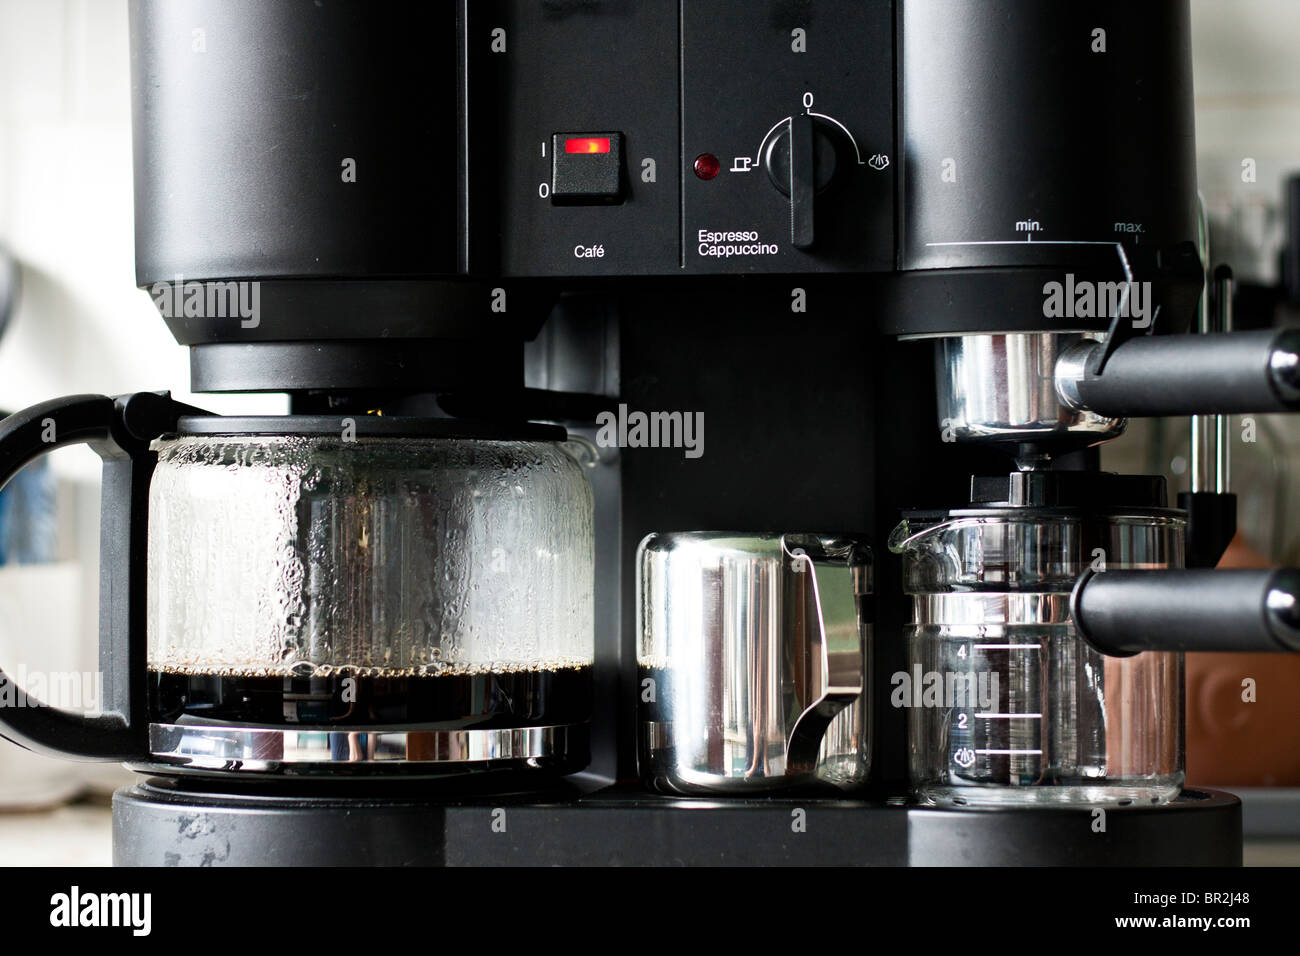 Krups coffee machine Stock Photo - Alamy